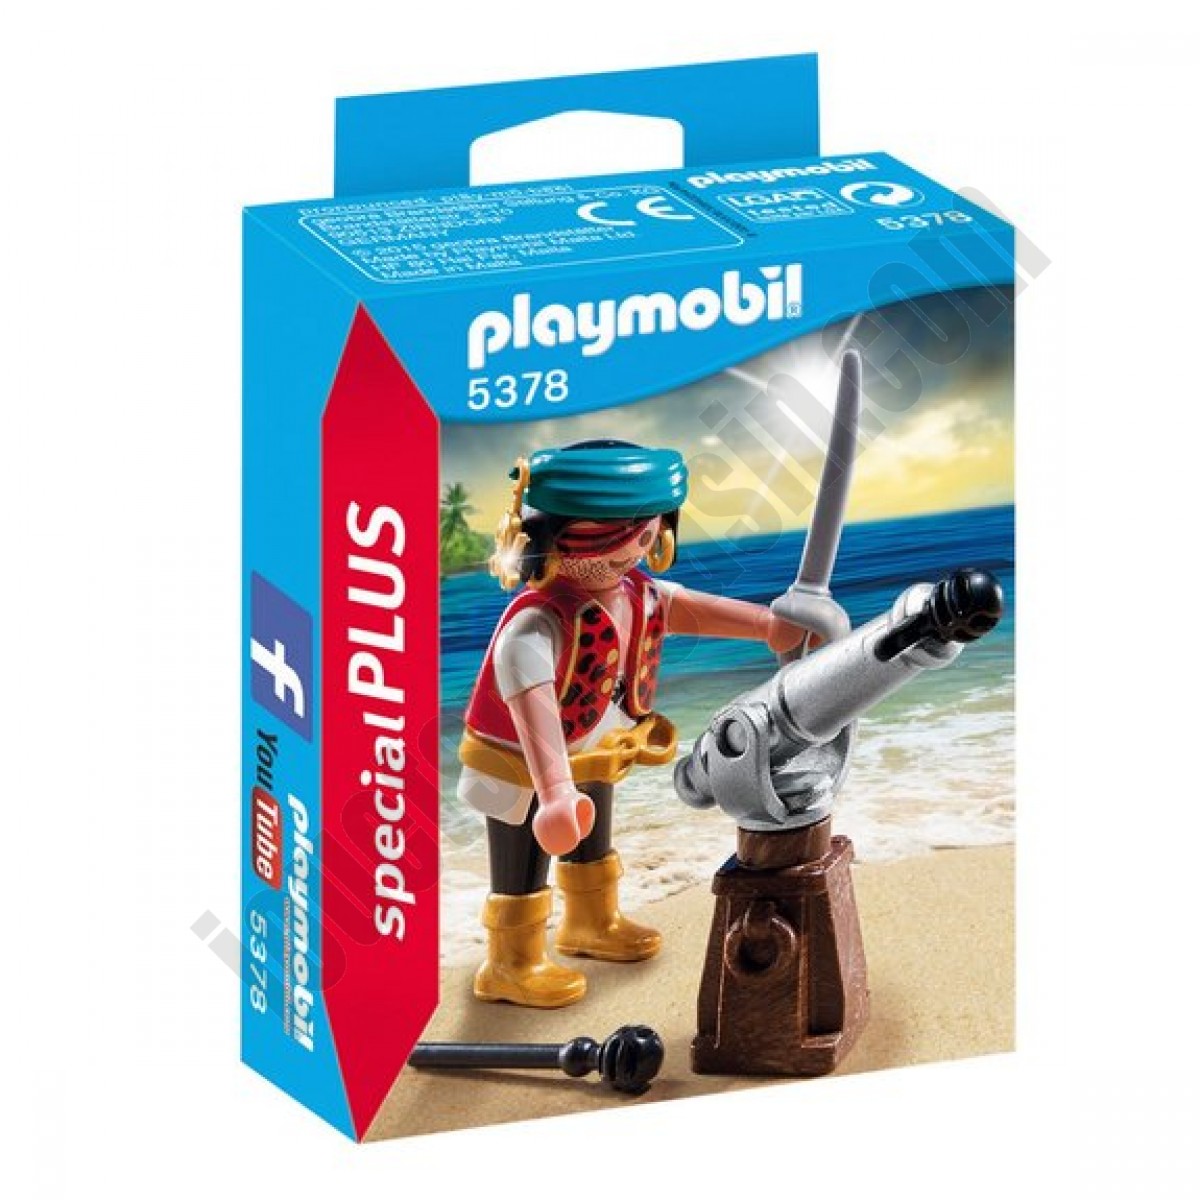 Canonnier des pirates Playmobil Spécial PLUS 5378 ◆◆◆ Nouveau - Canonnier des pirates Playmobil Spécial PLUS 5378 ◆◆◆ Nouveau